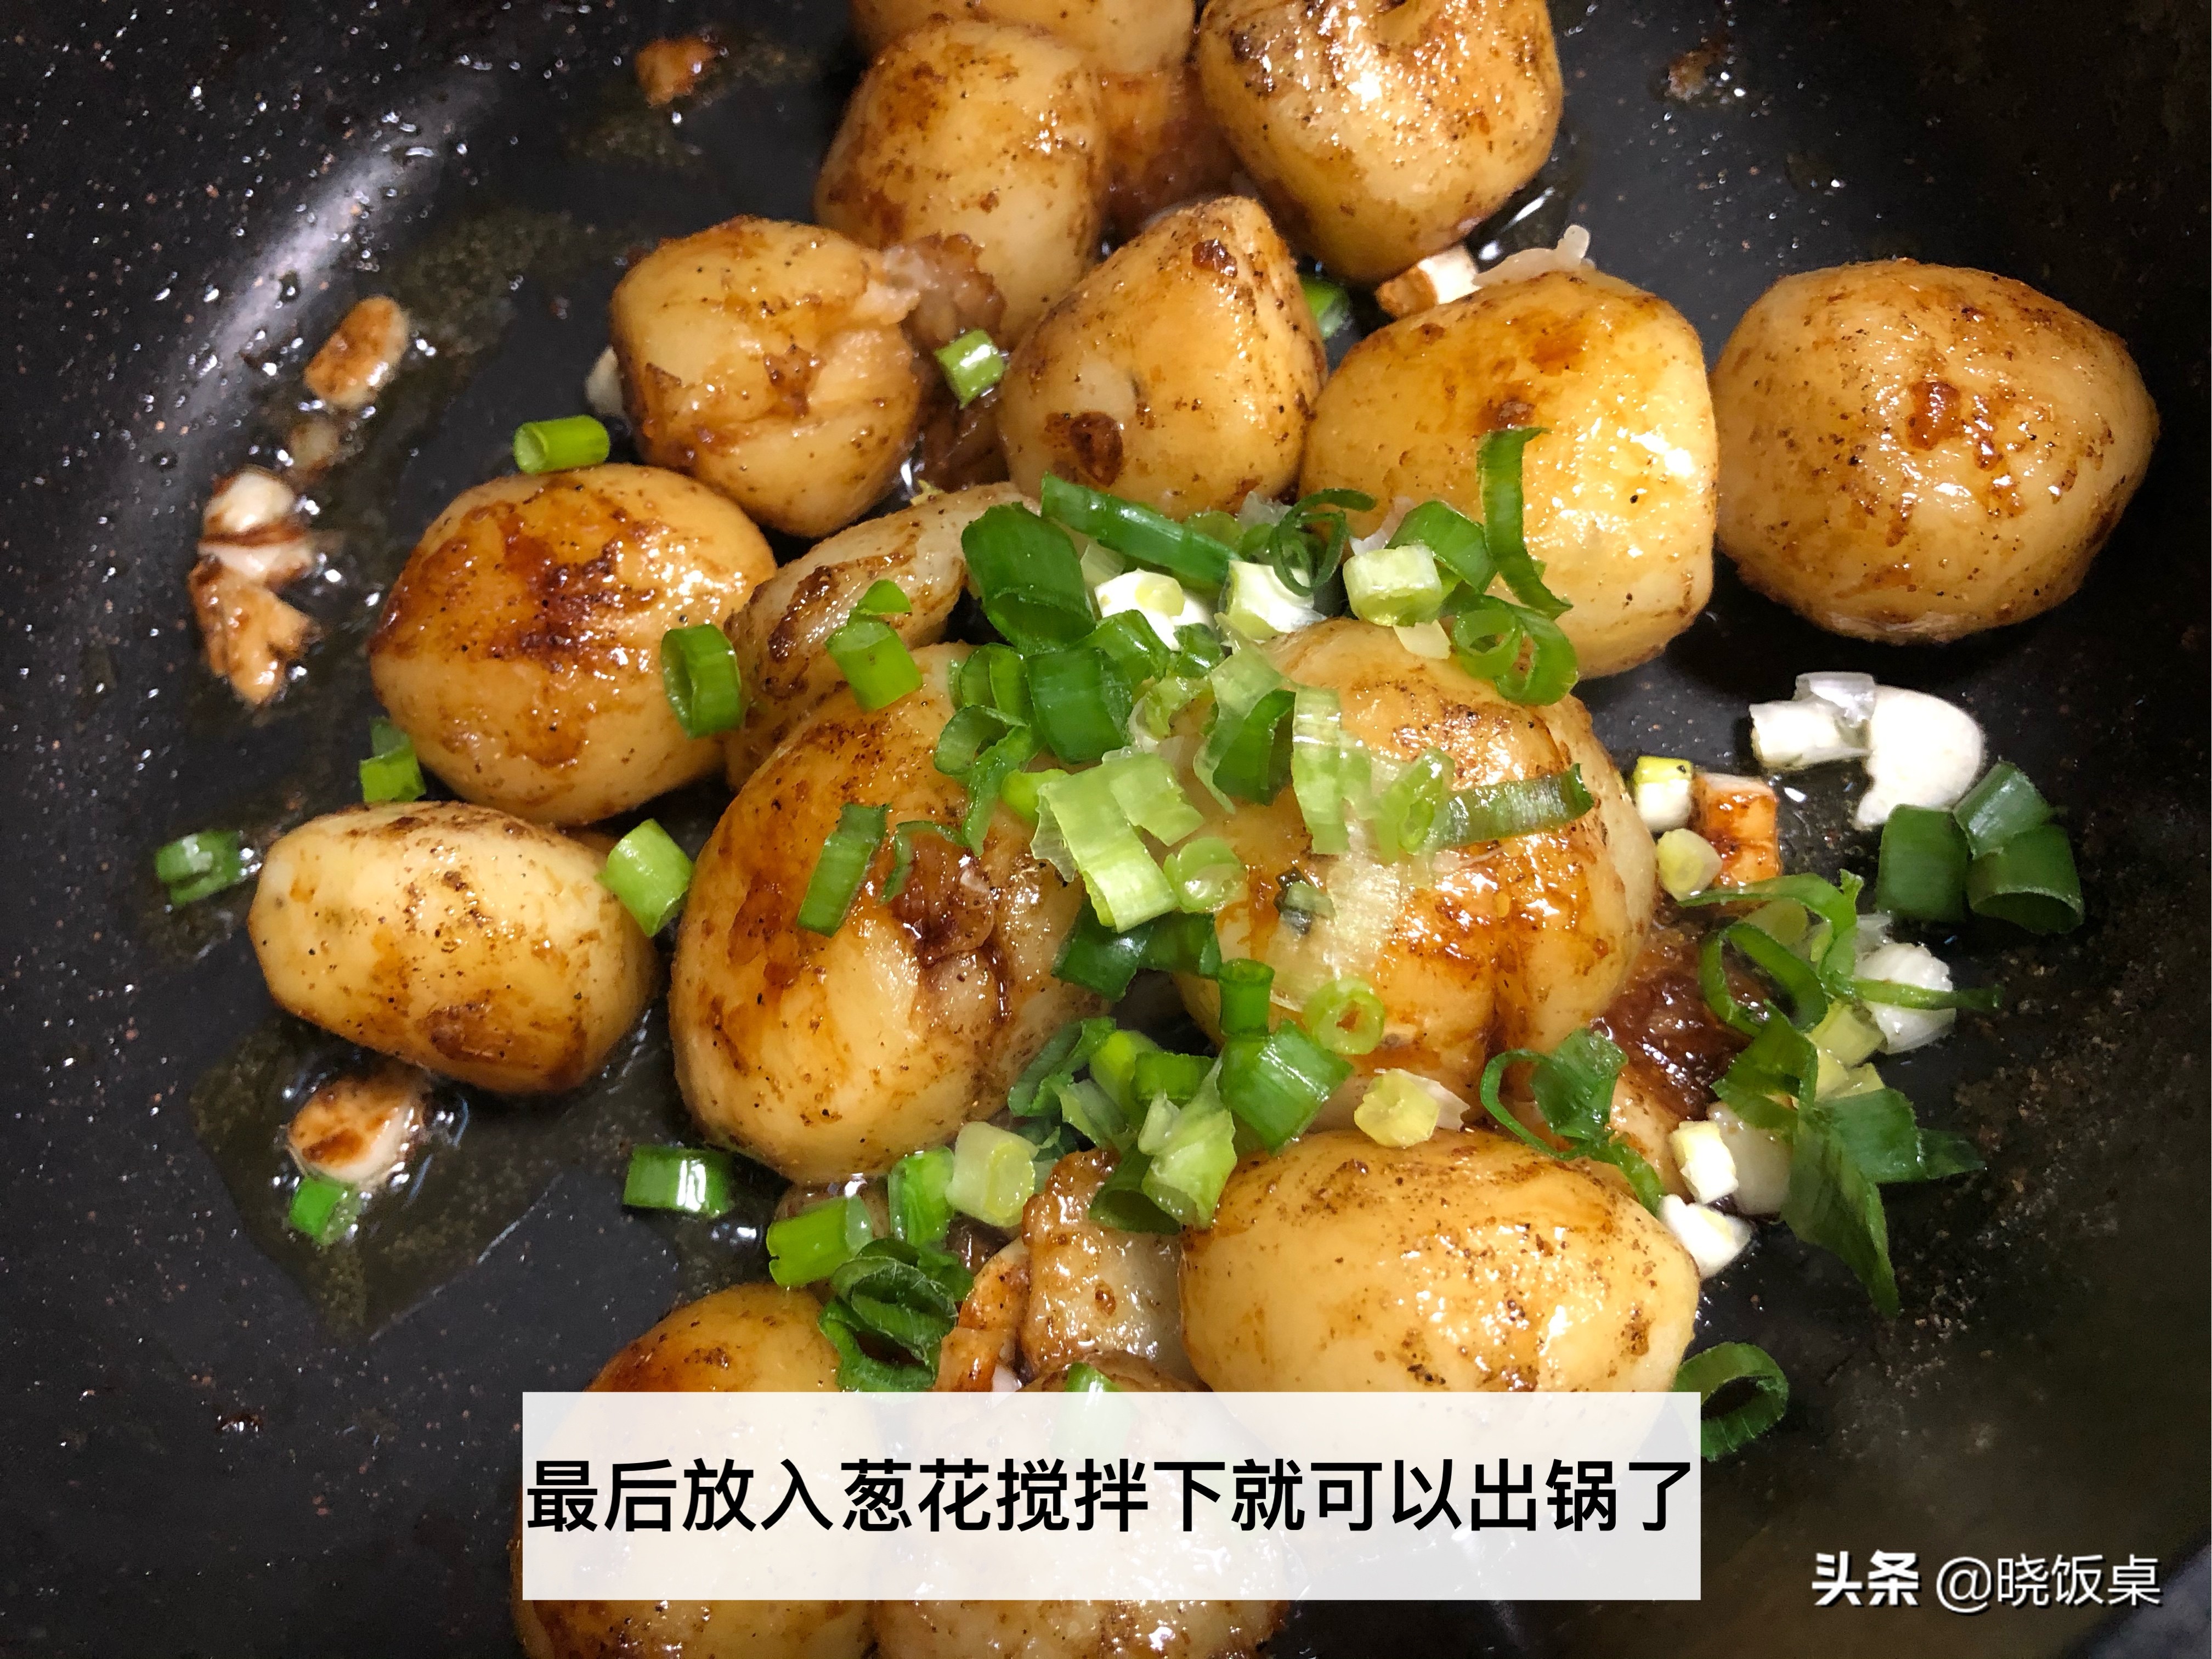 土豆别再炒着吃了，教你做成外焦里糯的椒盐土豆，全家爱吃零失误